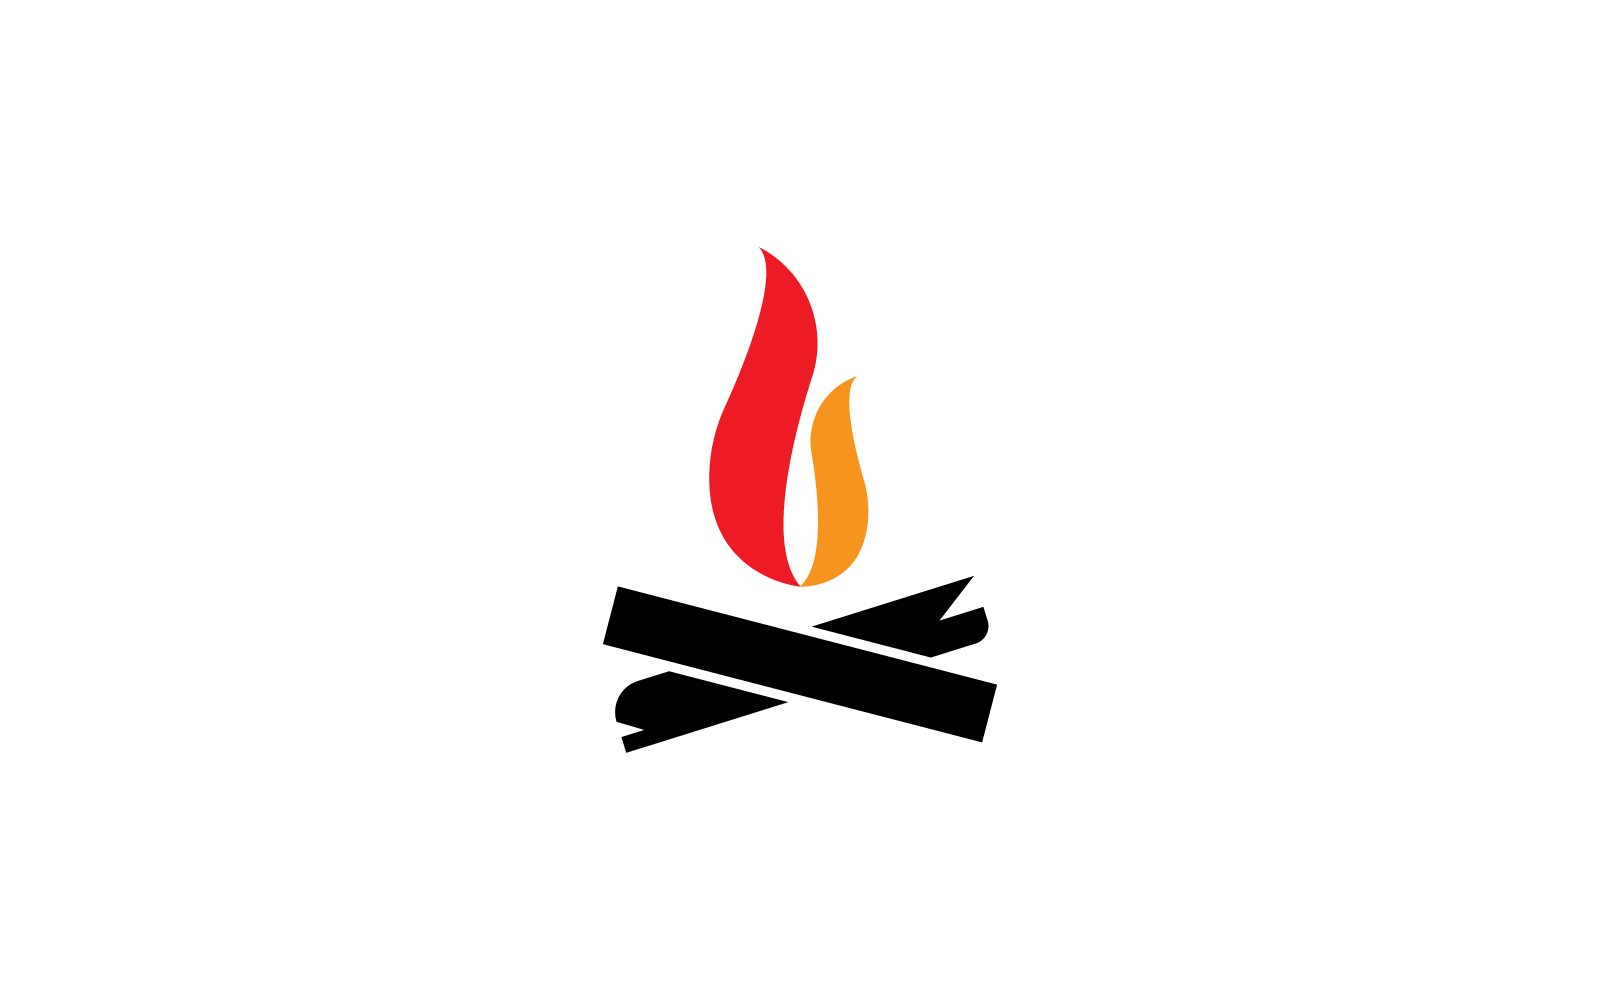 Fire flame illustration logo design vector